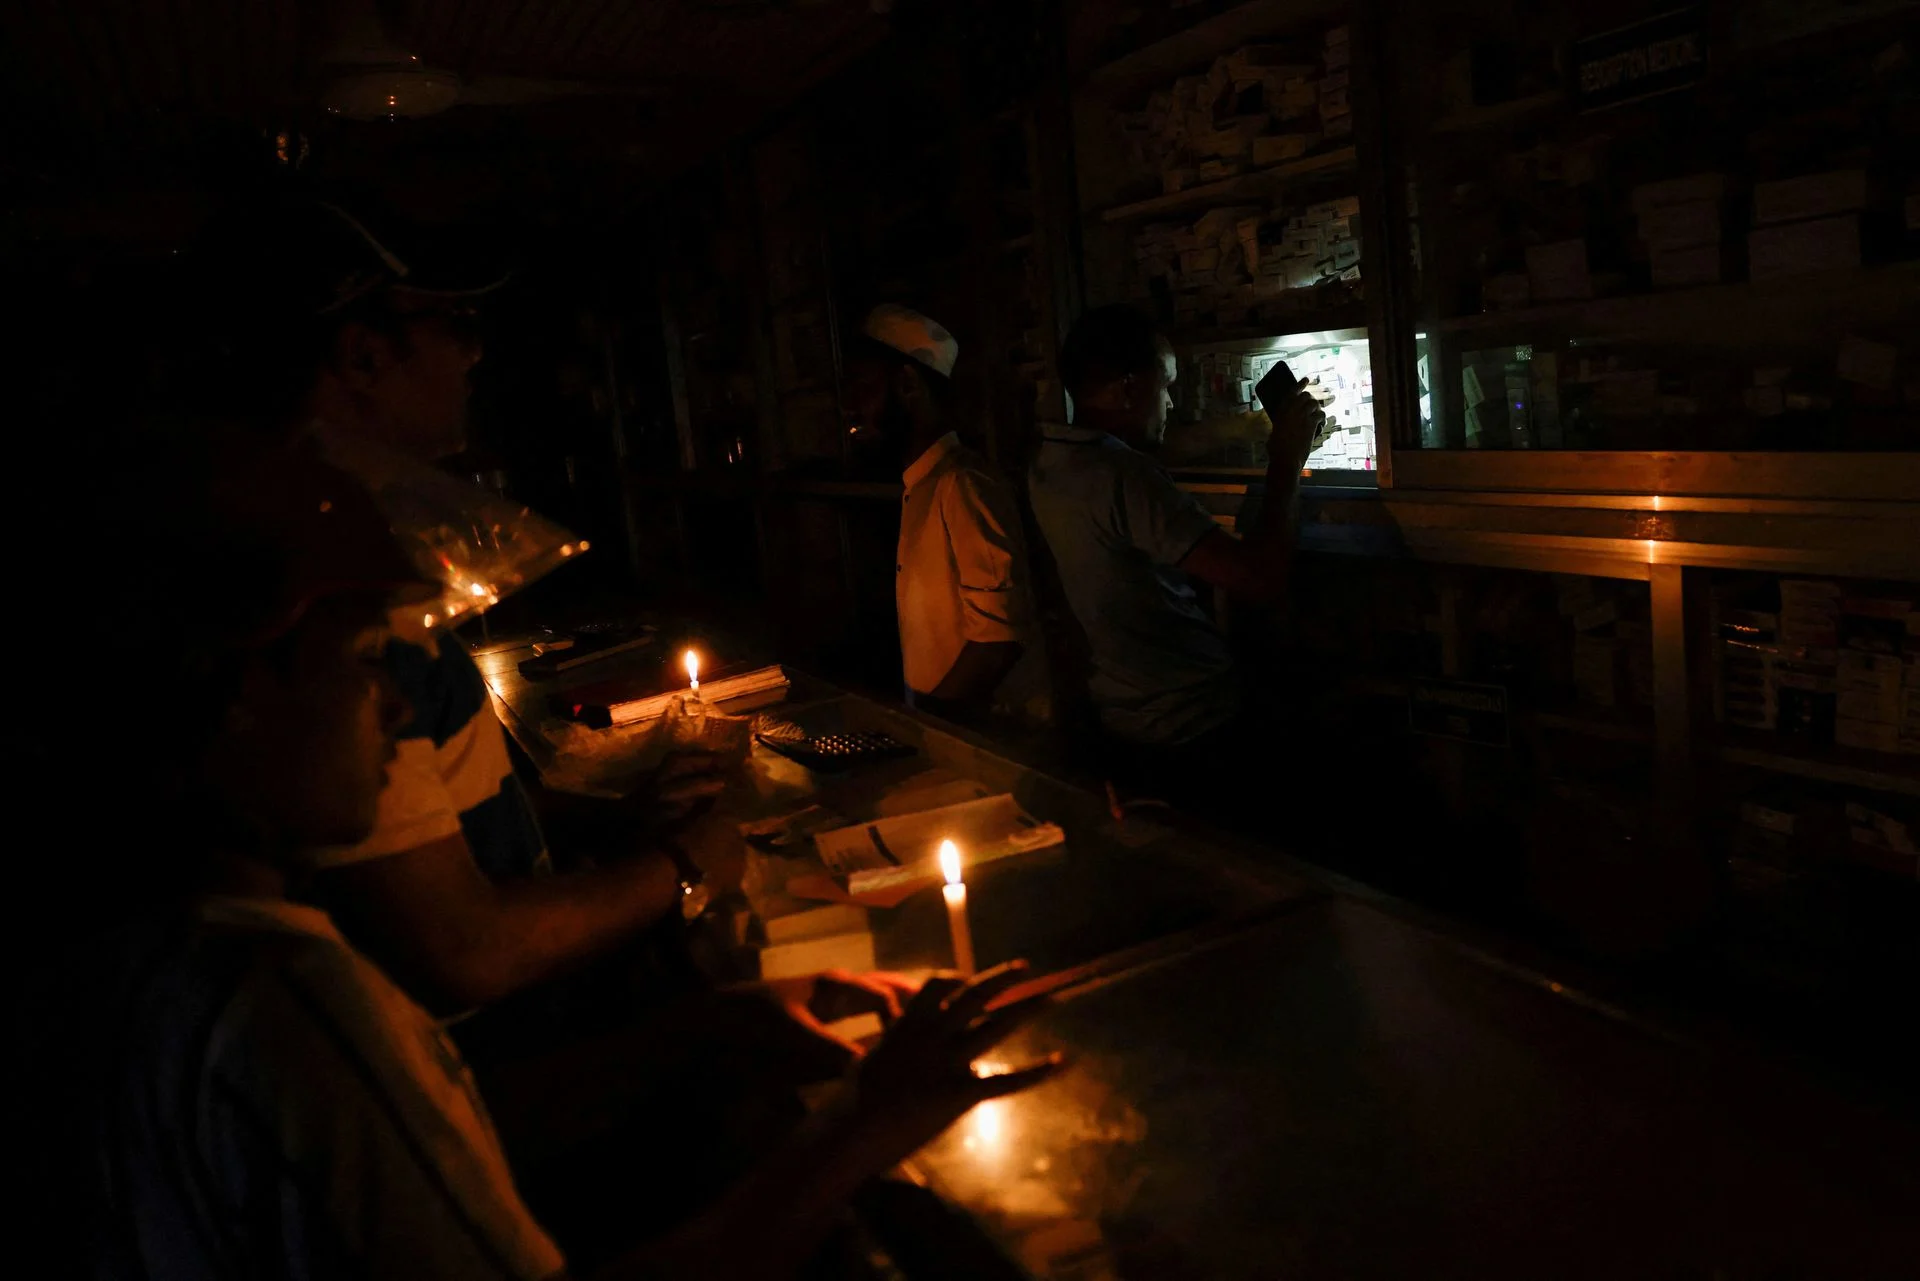 استمرار أزمة انقطاع الكهرباء في بنغلاديش لمدة أسبوعين جديدين